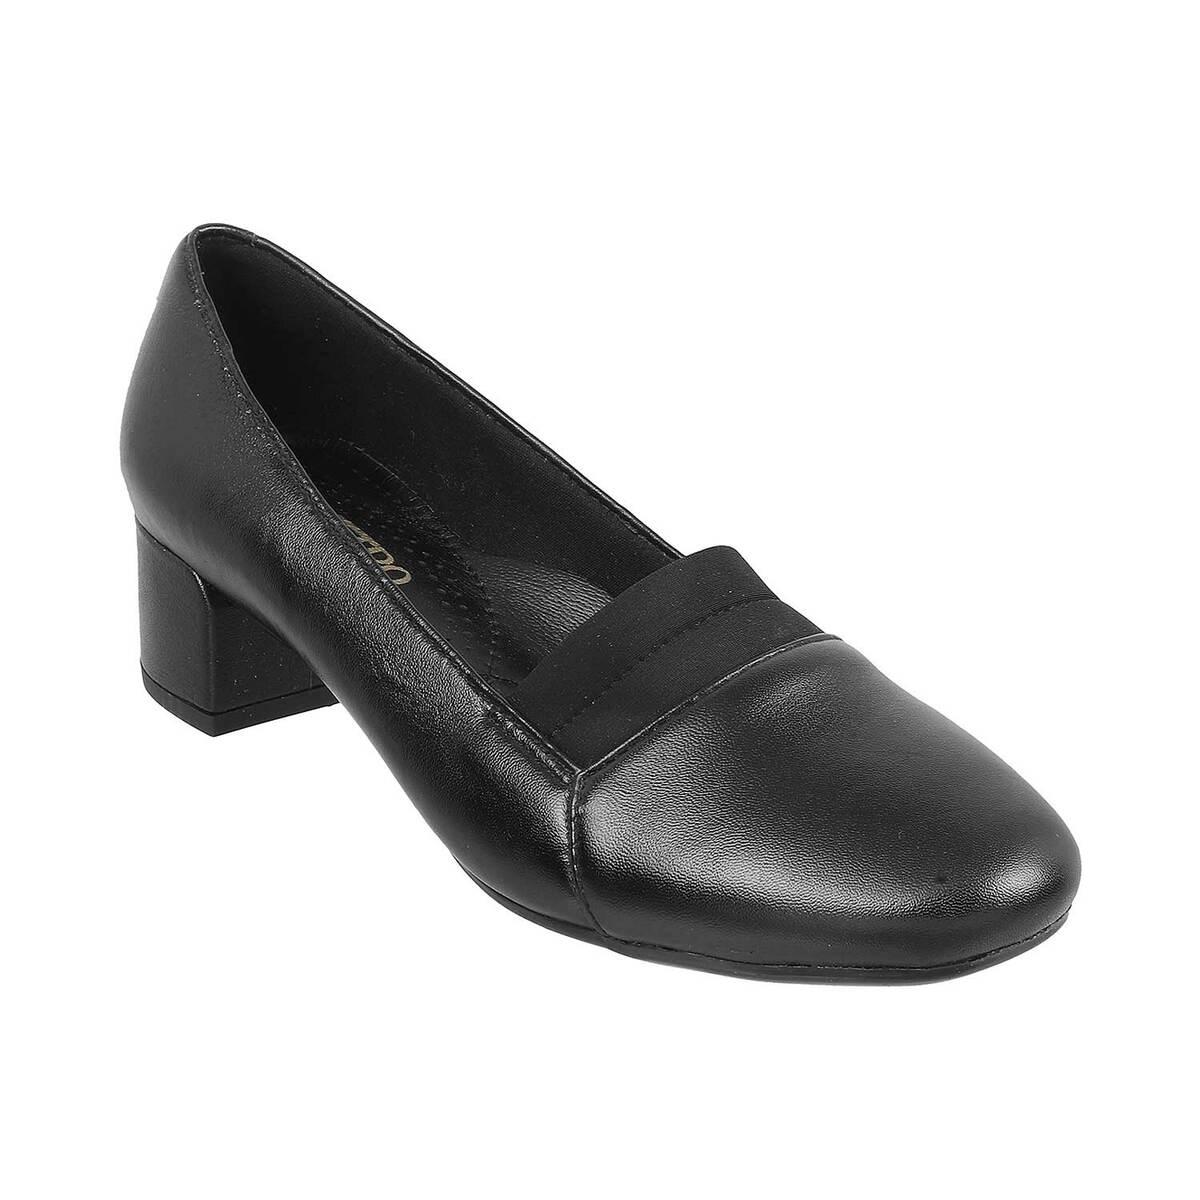 Buy Women Black Heels Online - 703430 | Van Heusen